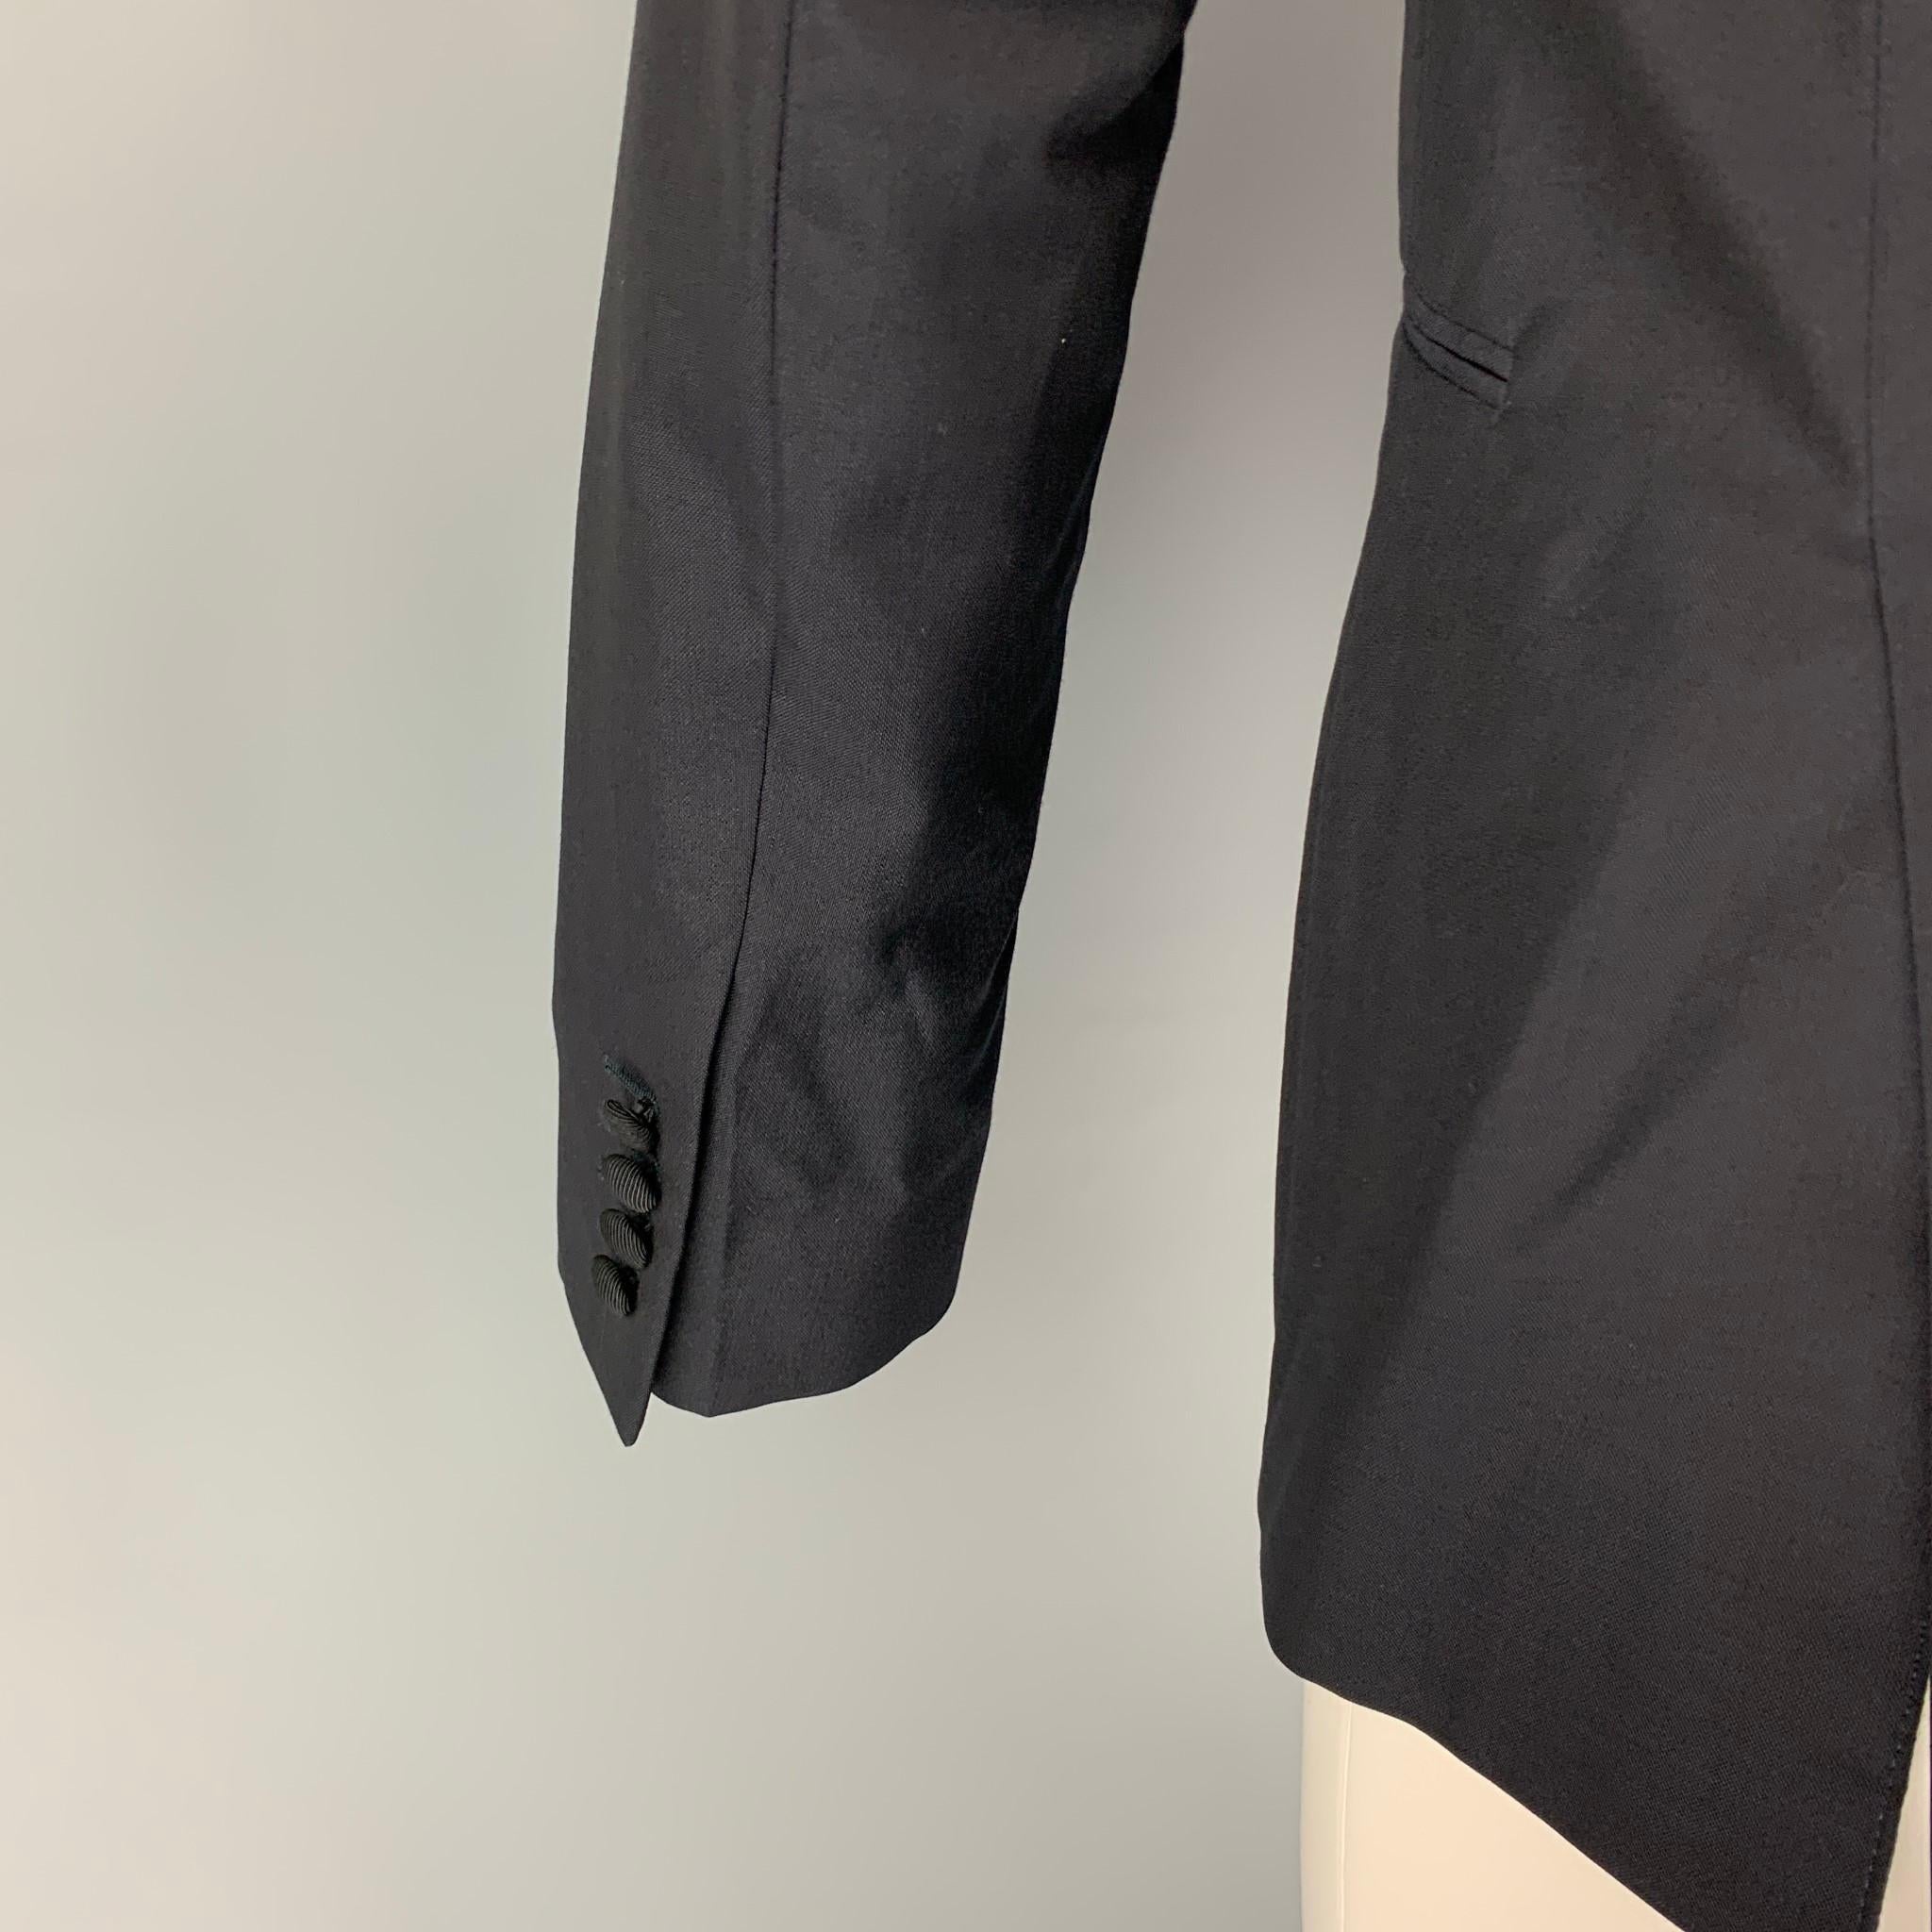 SPENCER HART Size 38 Black Wool Mohair Tuxedo Sport Coat 1